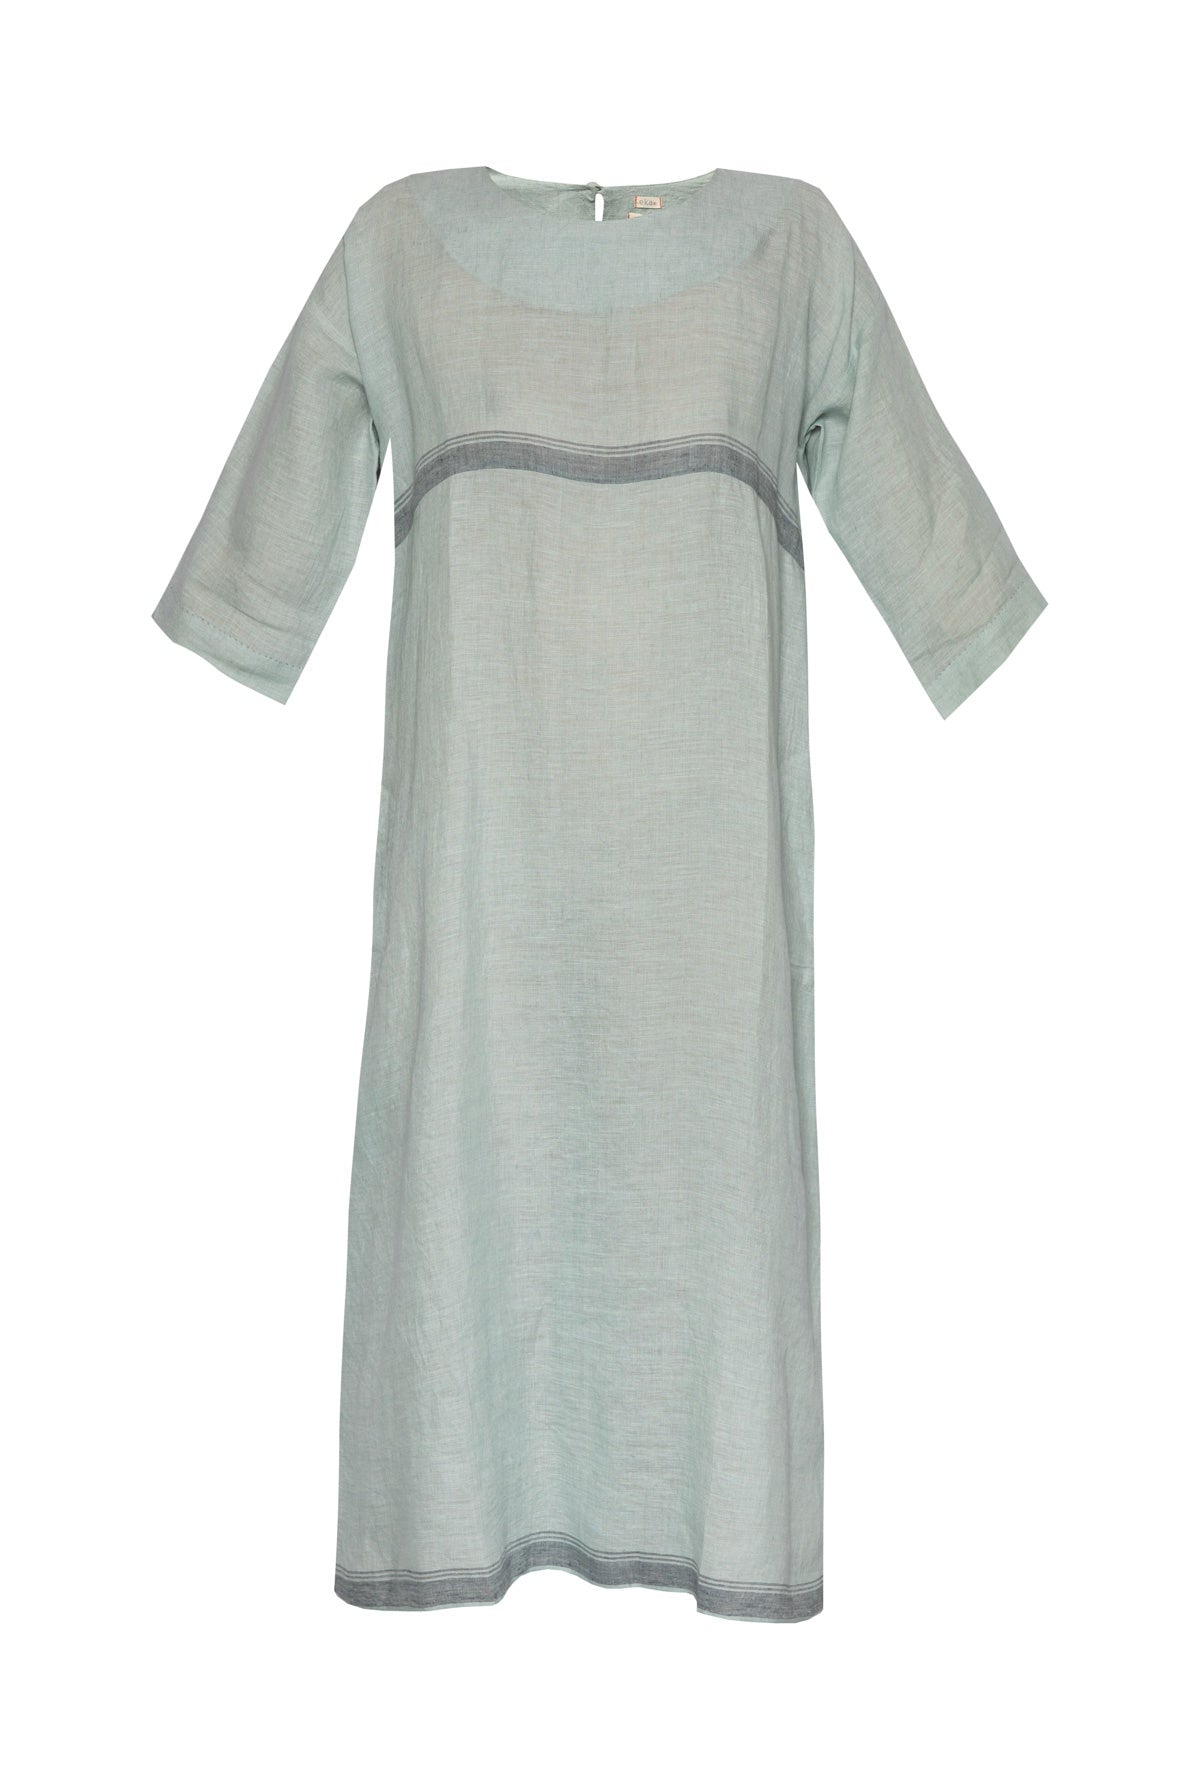 Thyme Linen Dress -  Light Teal